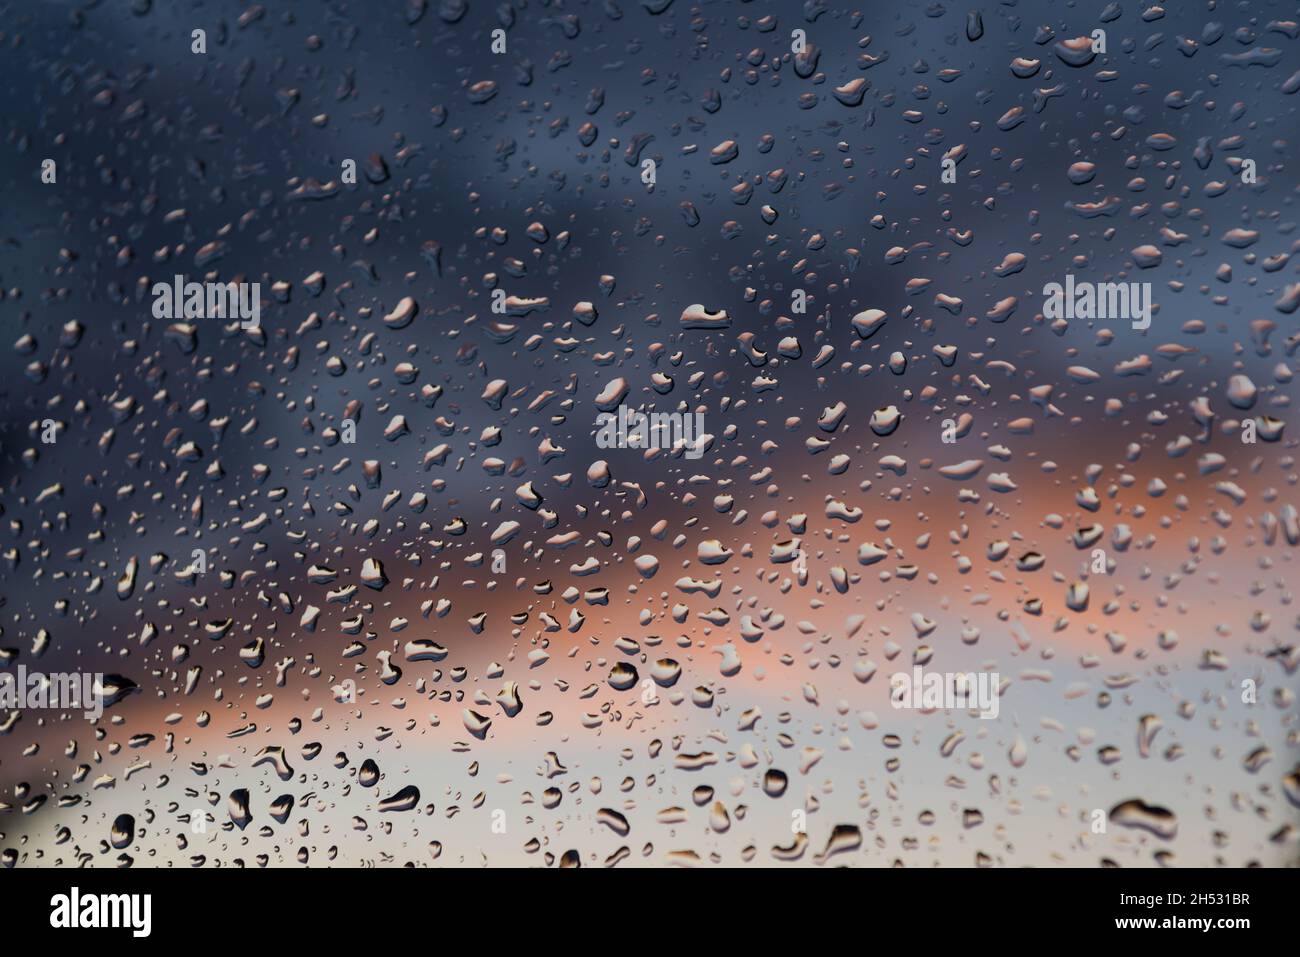 Dopo la pioggia. Il vetro della finestra è coperto all'esterno con gocce d'acqua. Sullo sfondo ci sono nuvole scure. Foto Stock